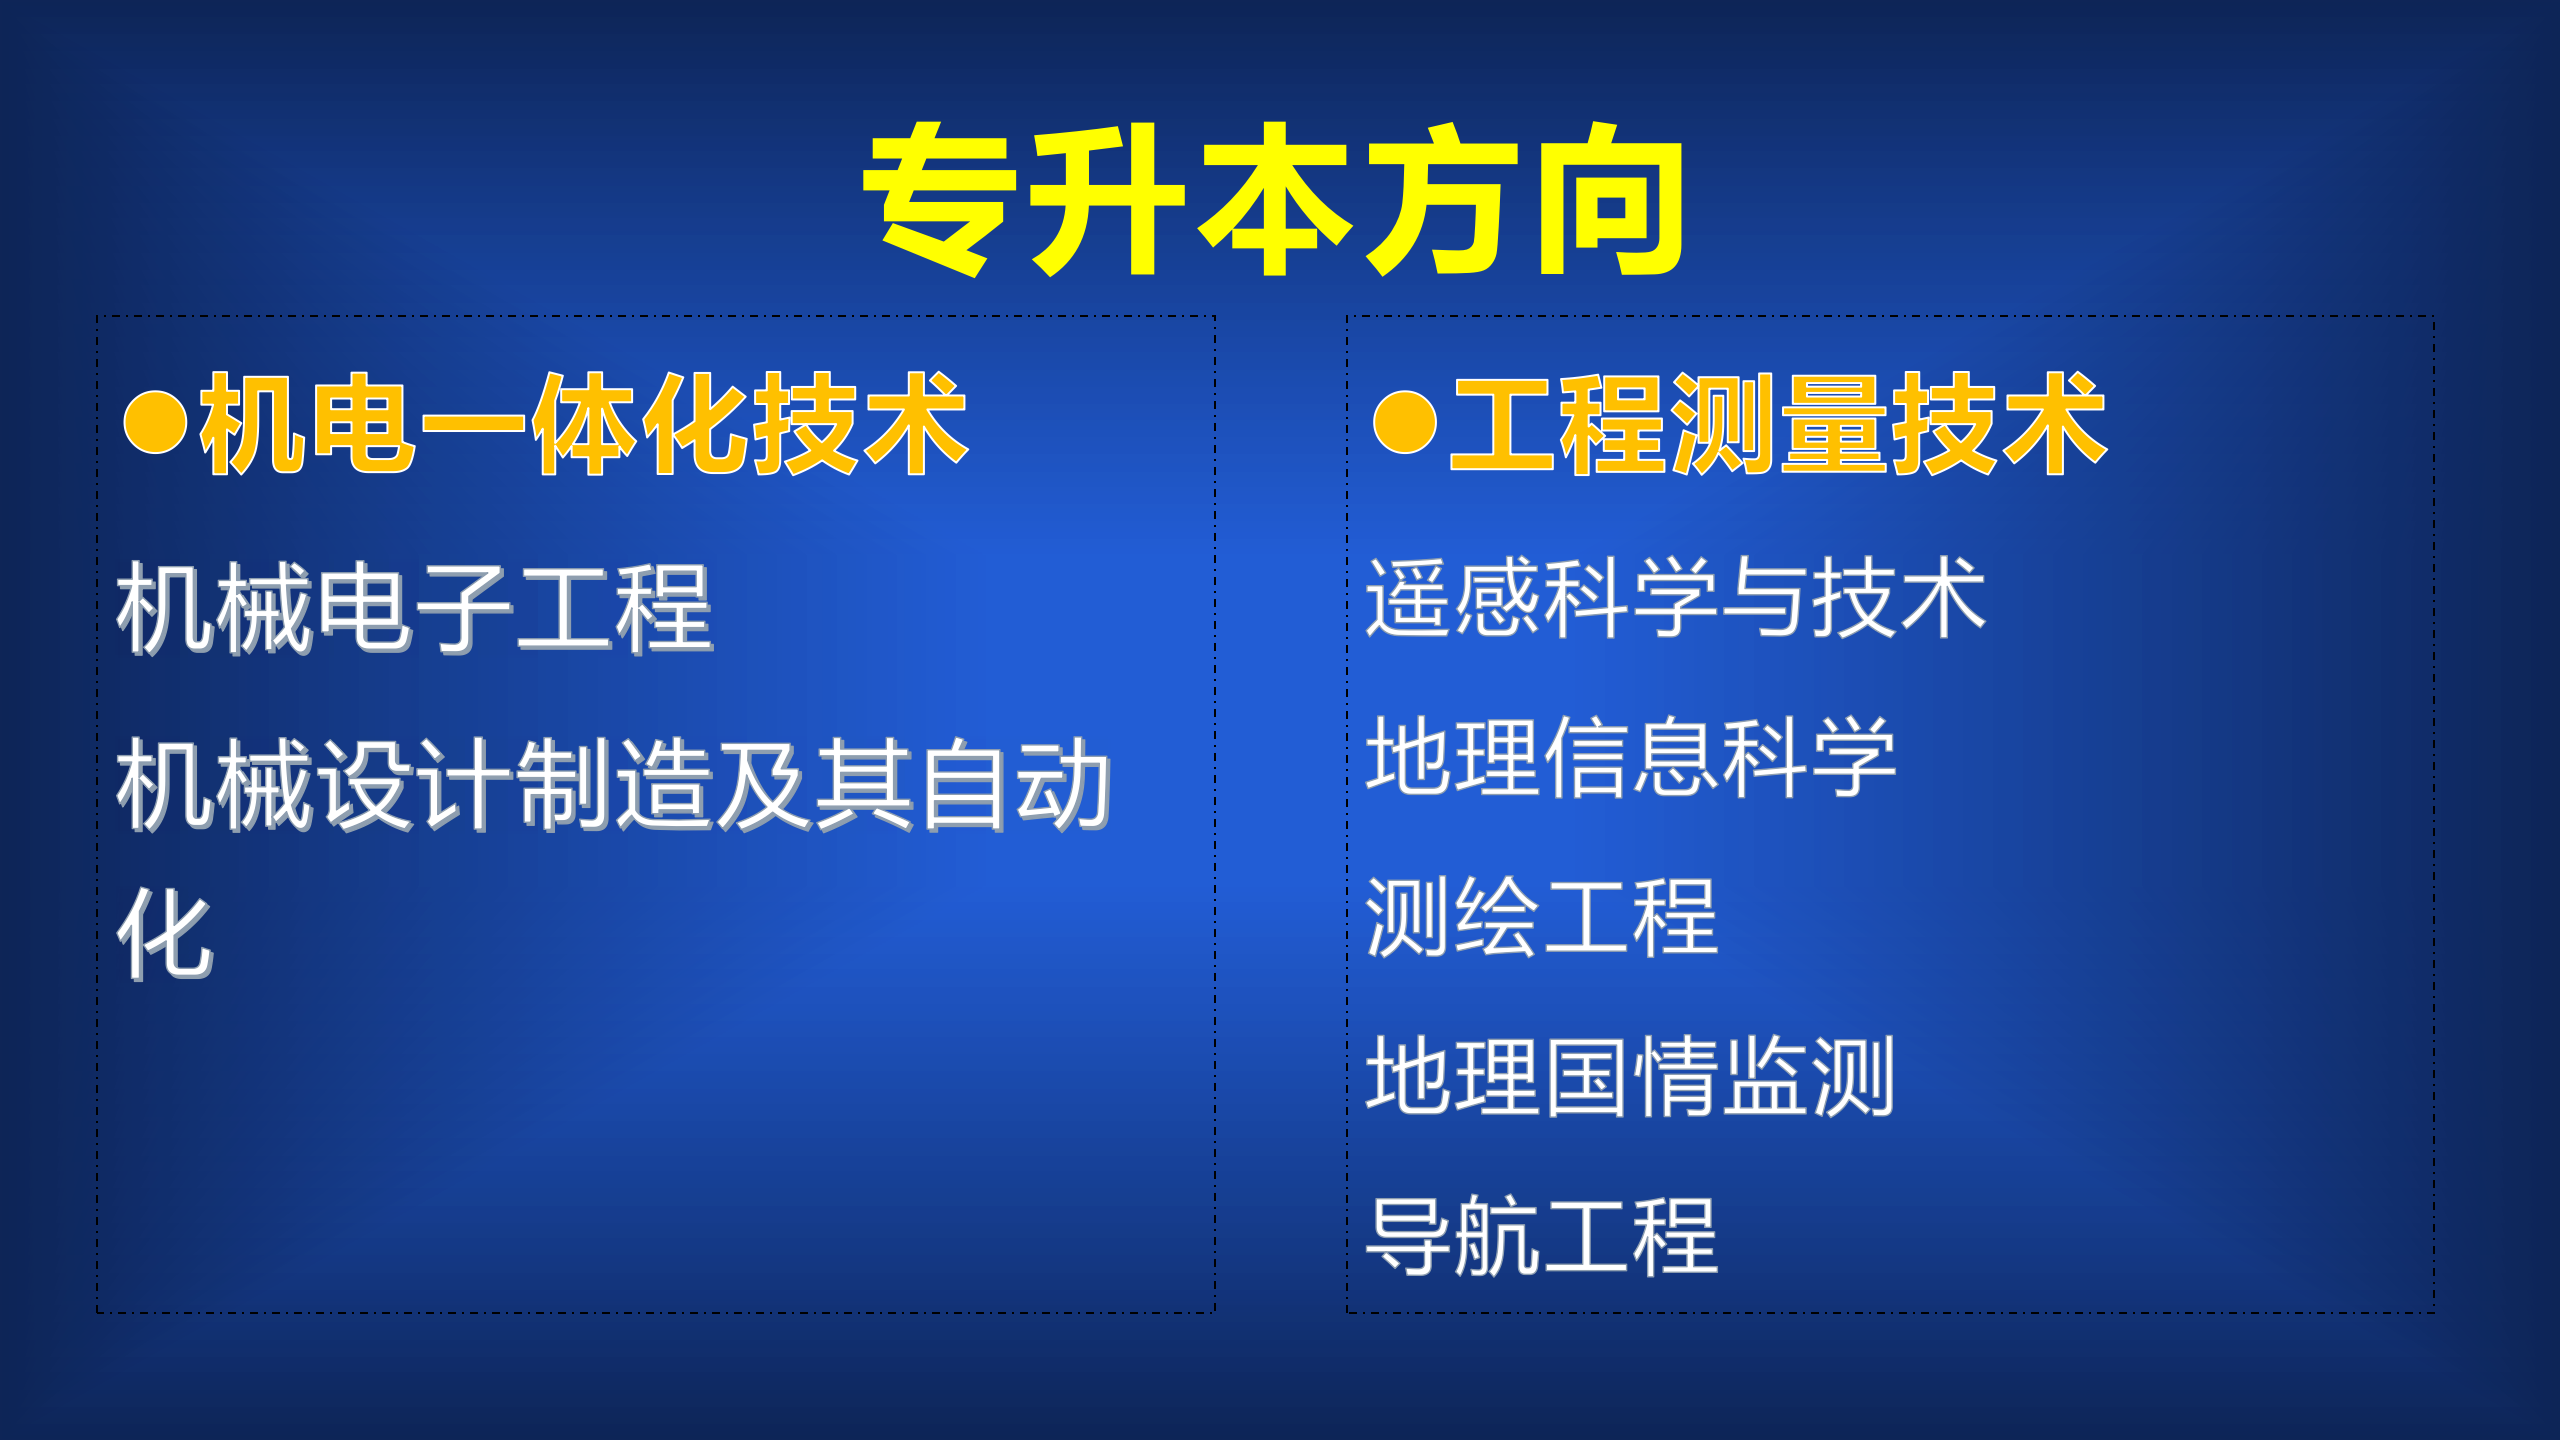 双高计划中的高职院校和专业介绍：北京工业职业技术学院及强势专业